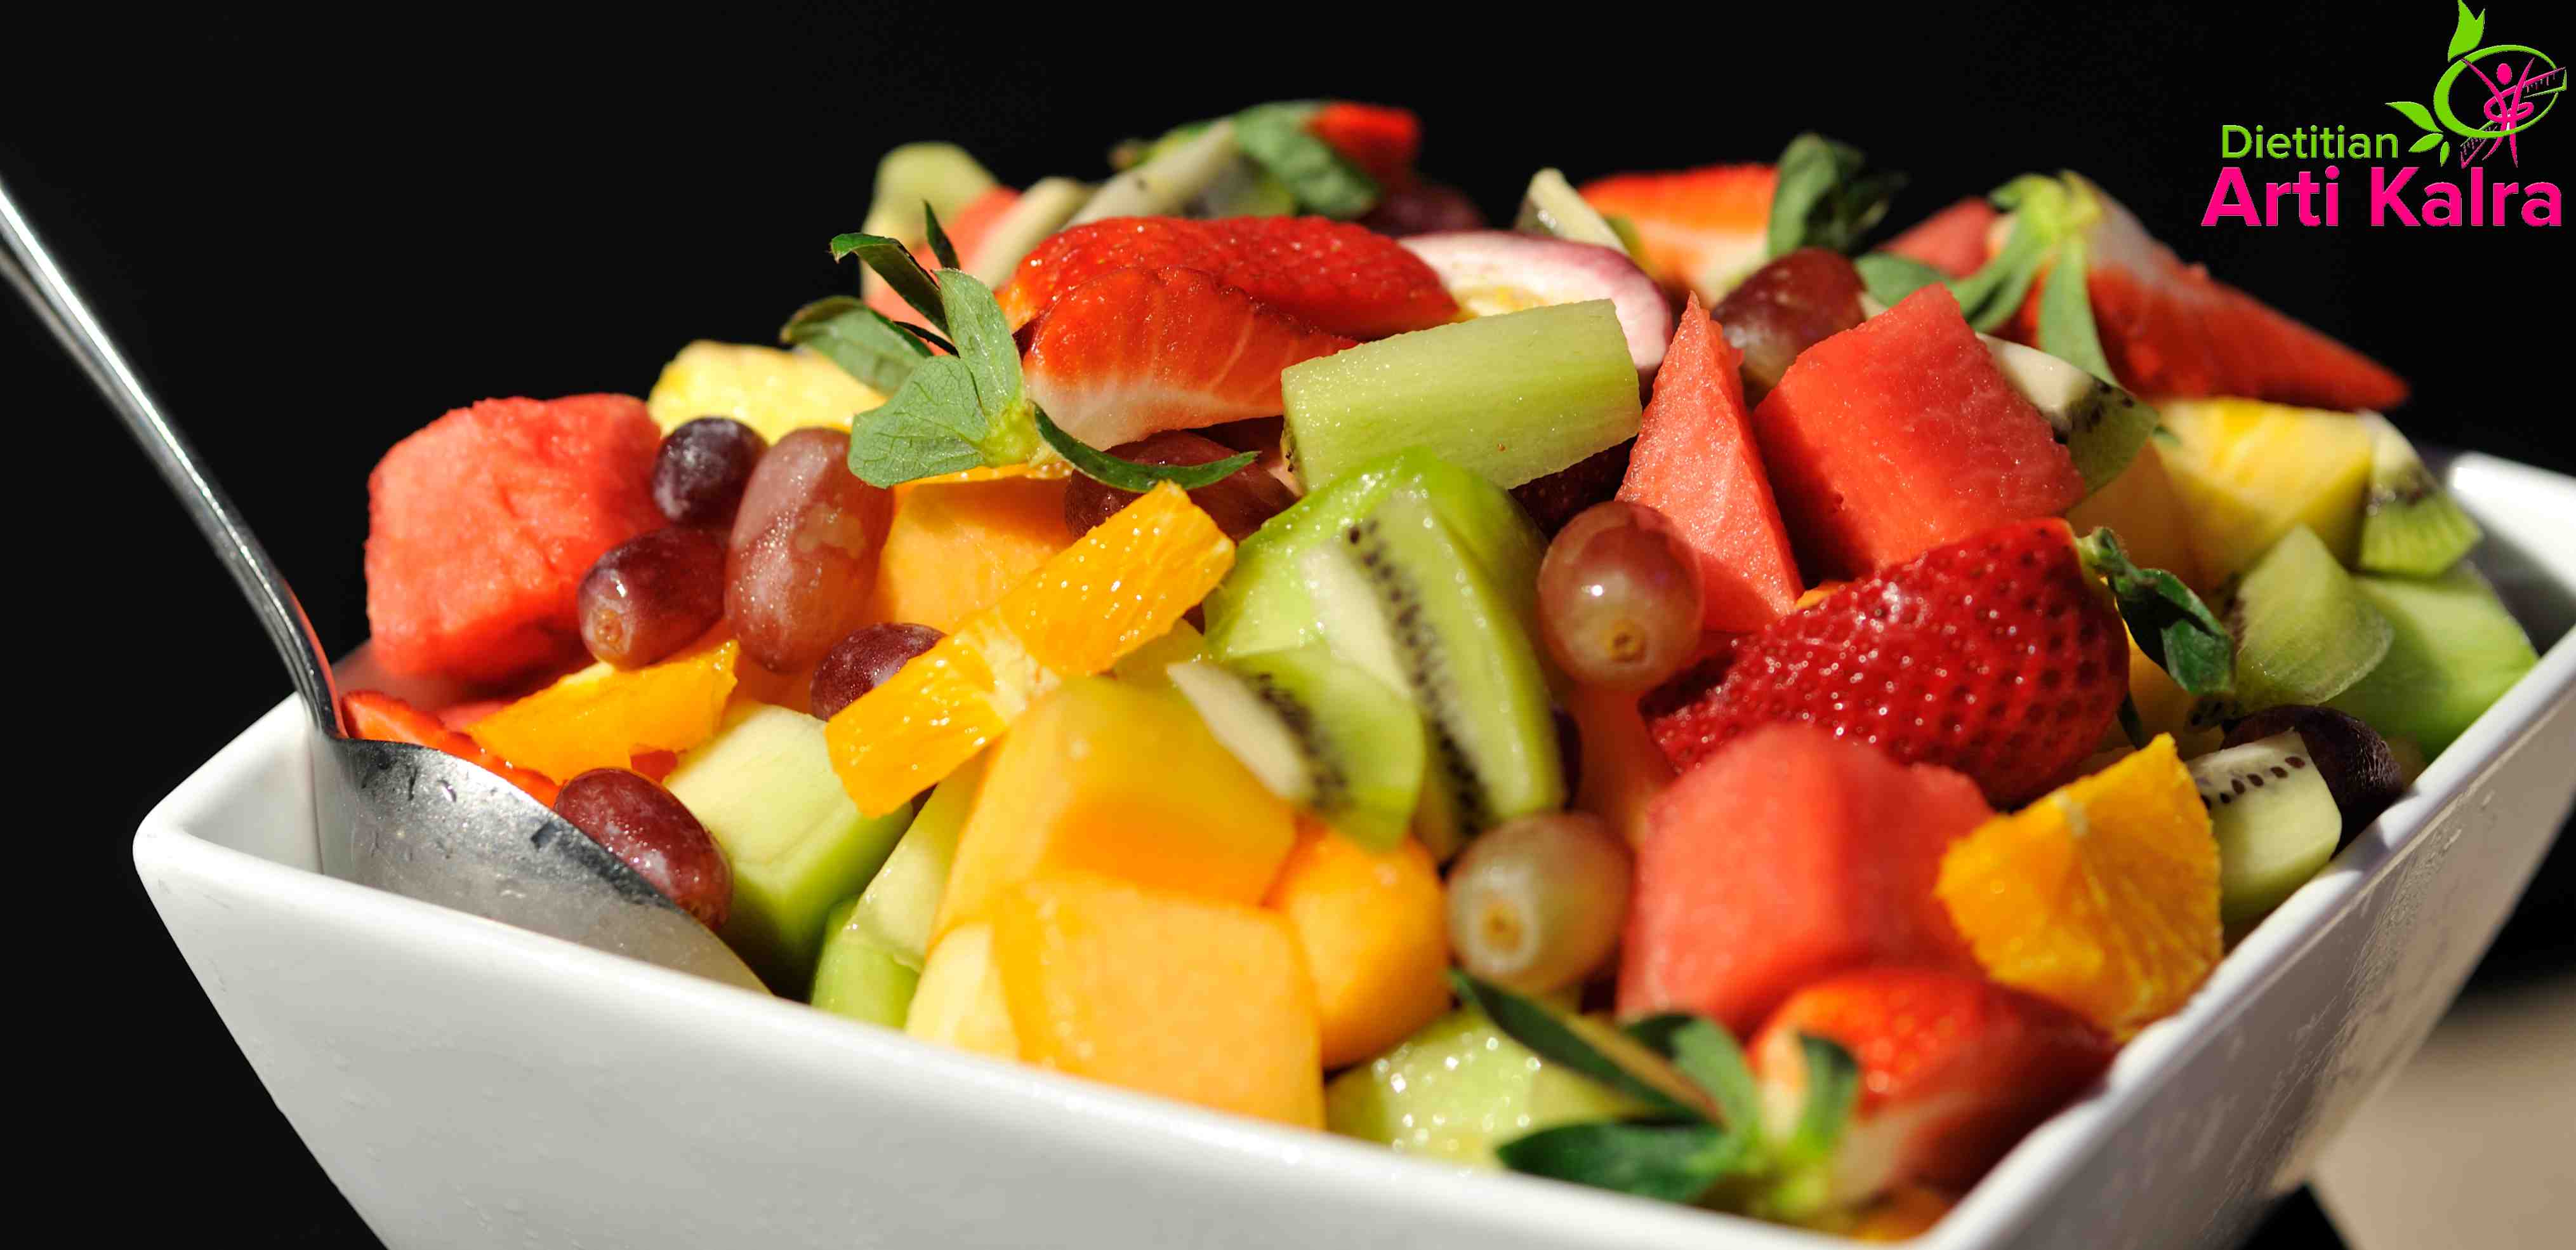 fruit salad